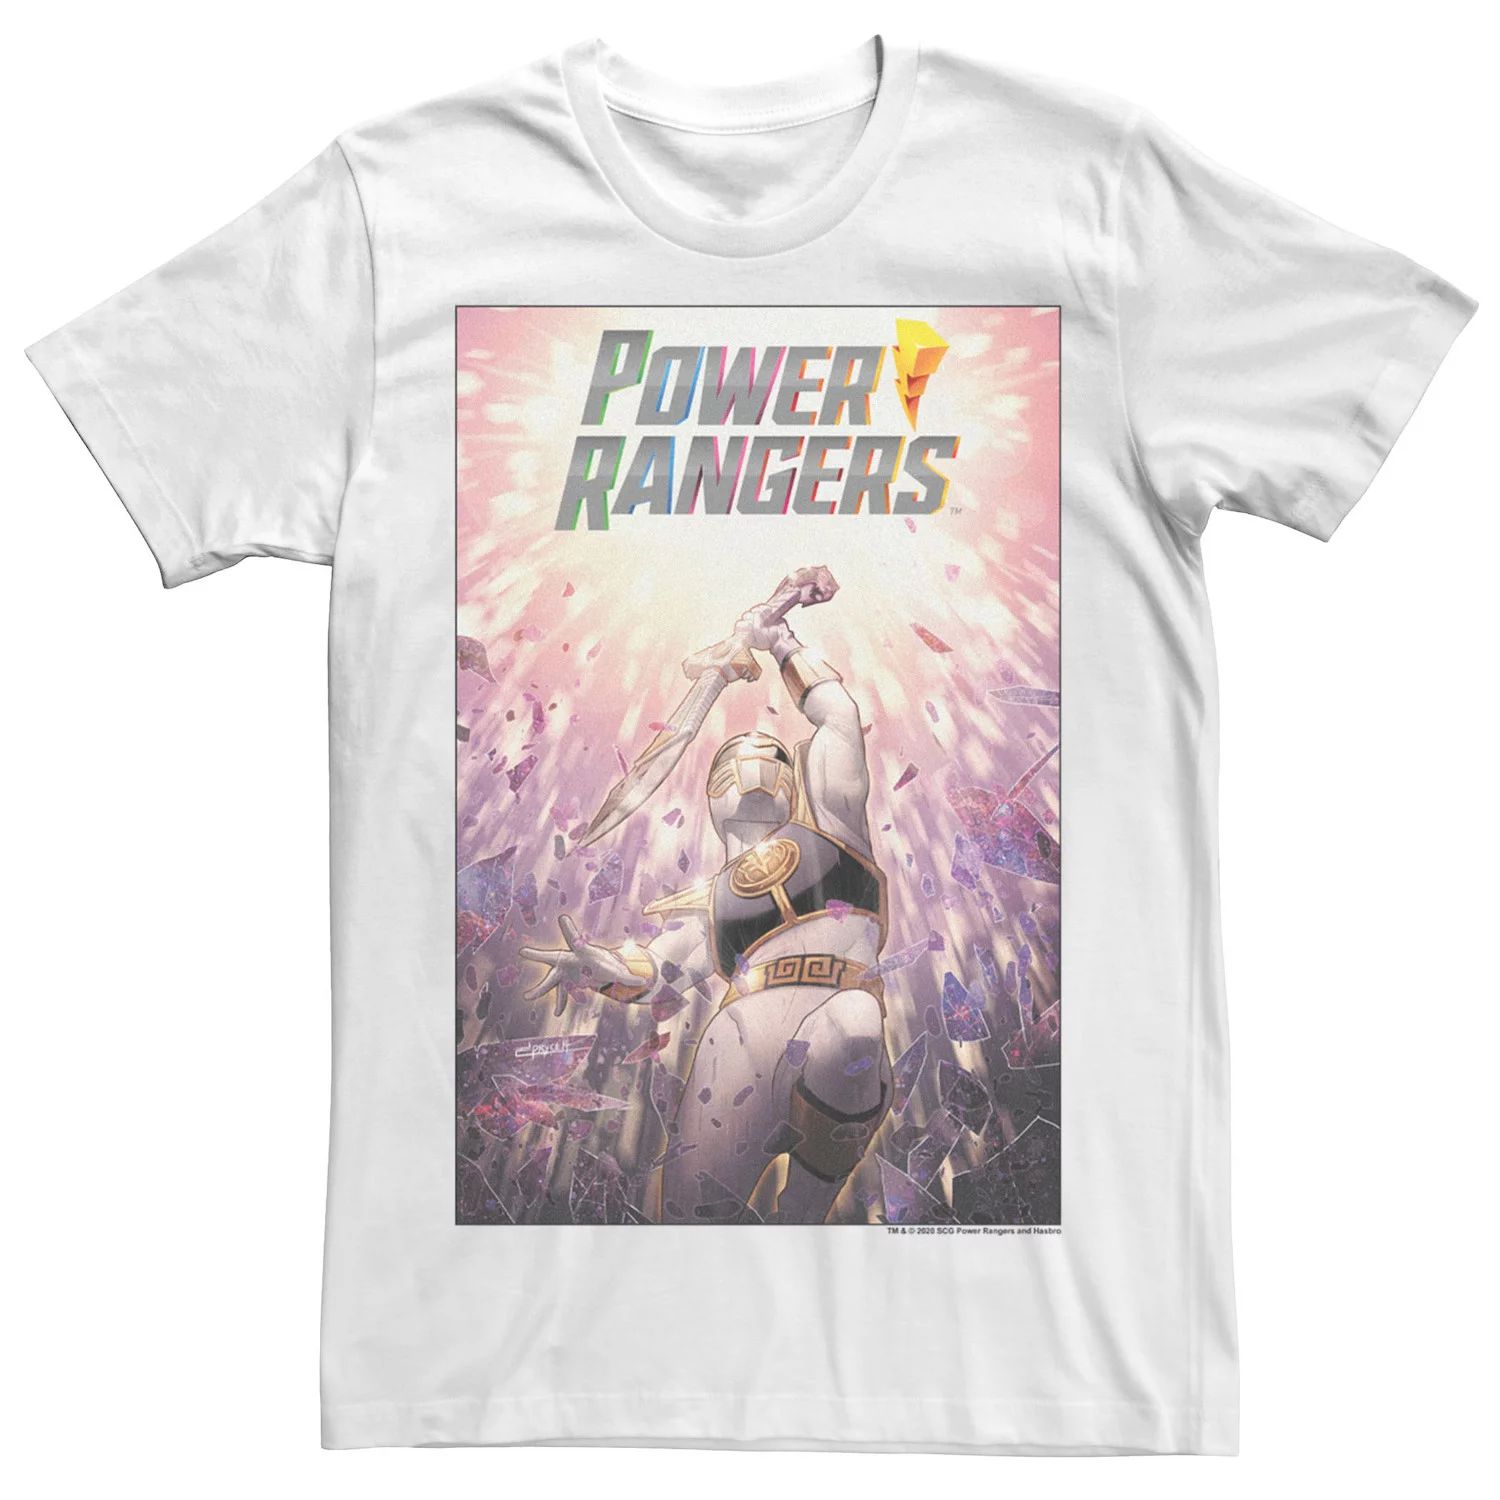 Мужская белая футболка с плакатом Power Rangers Ranger Licensed Character